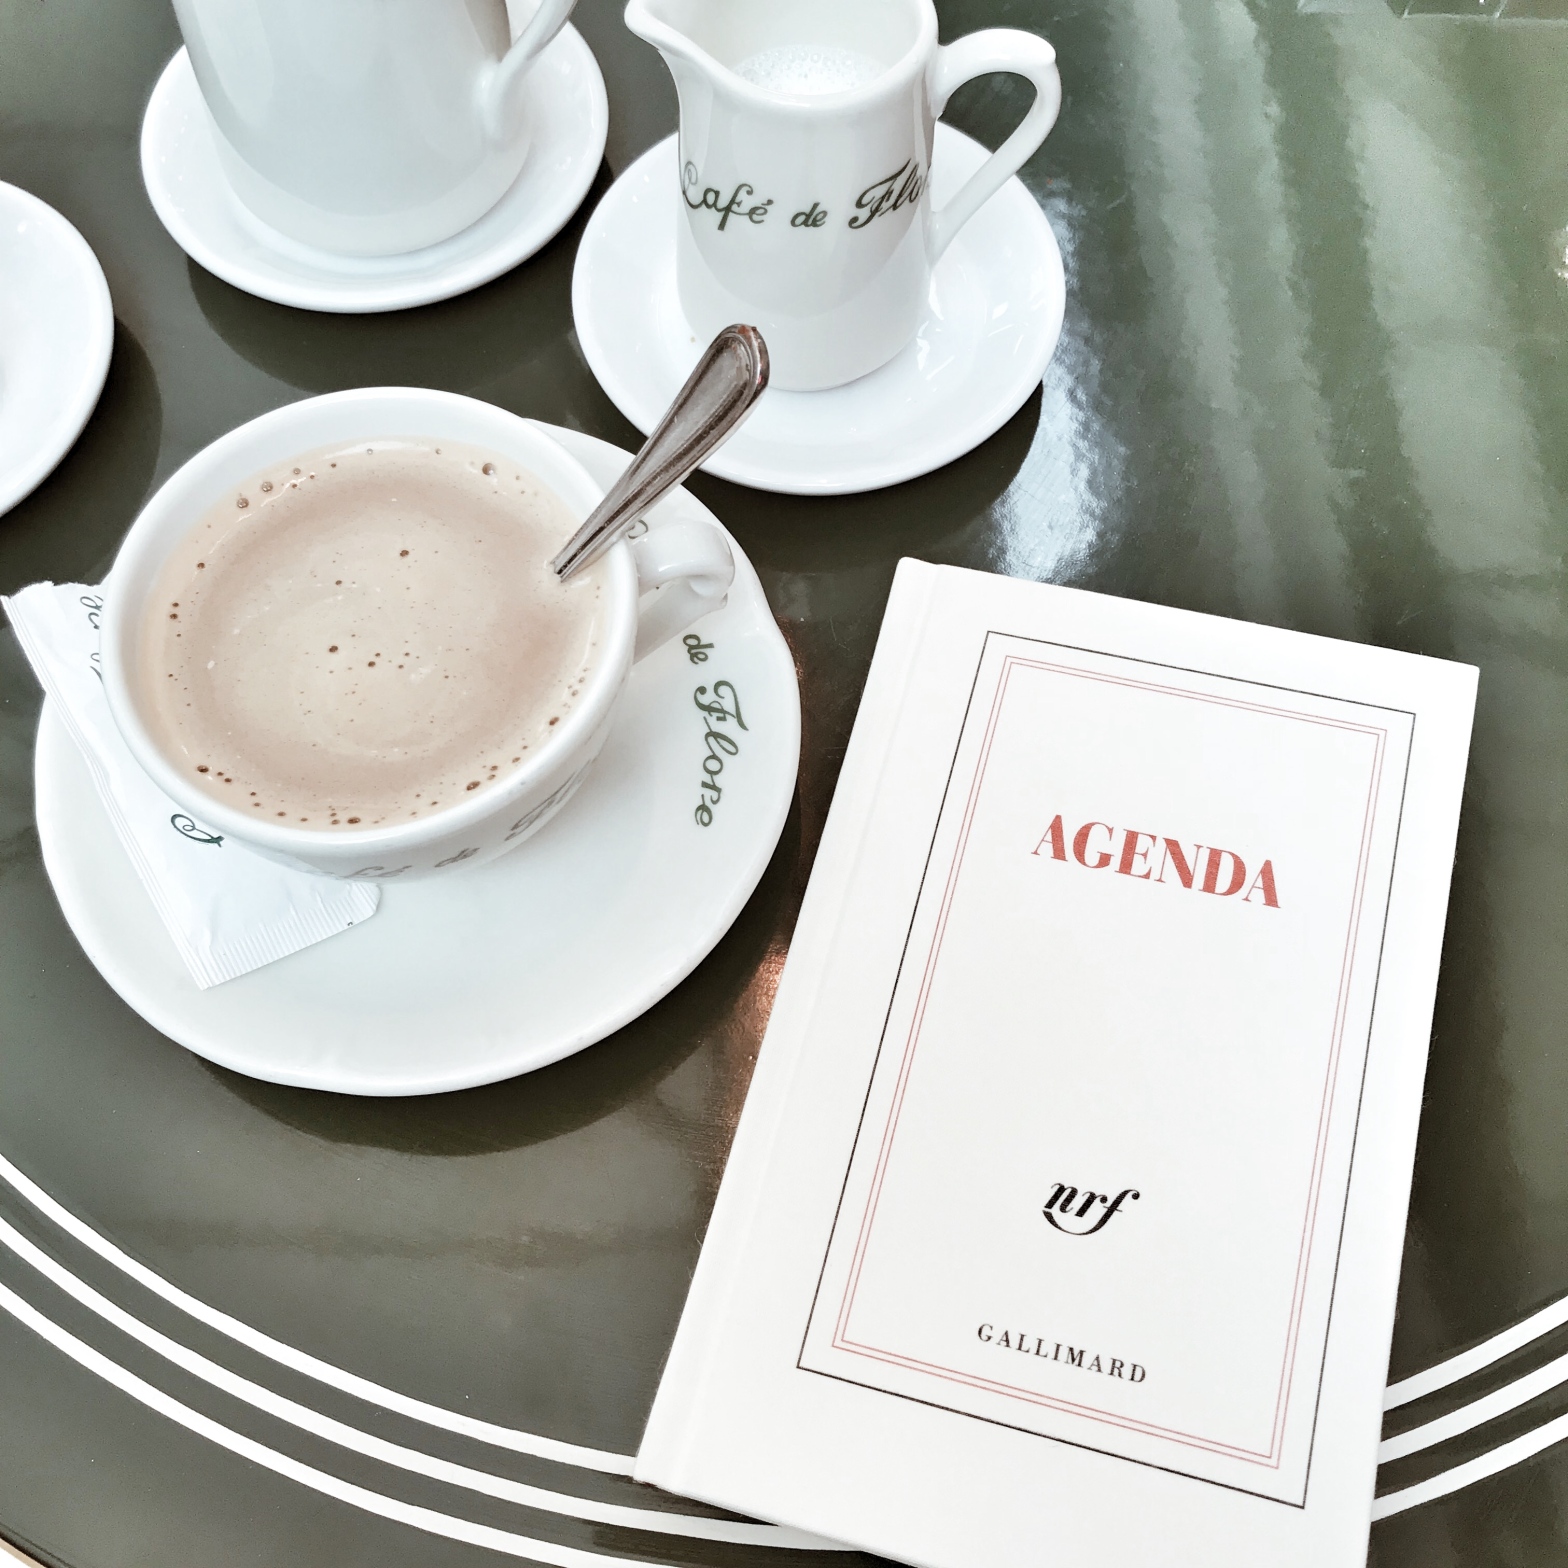 Prendre un café au Flore avec mon agenda Gallimard